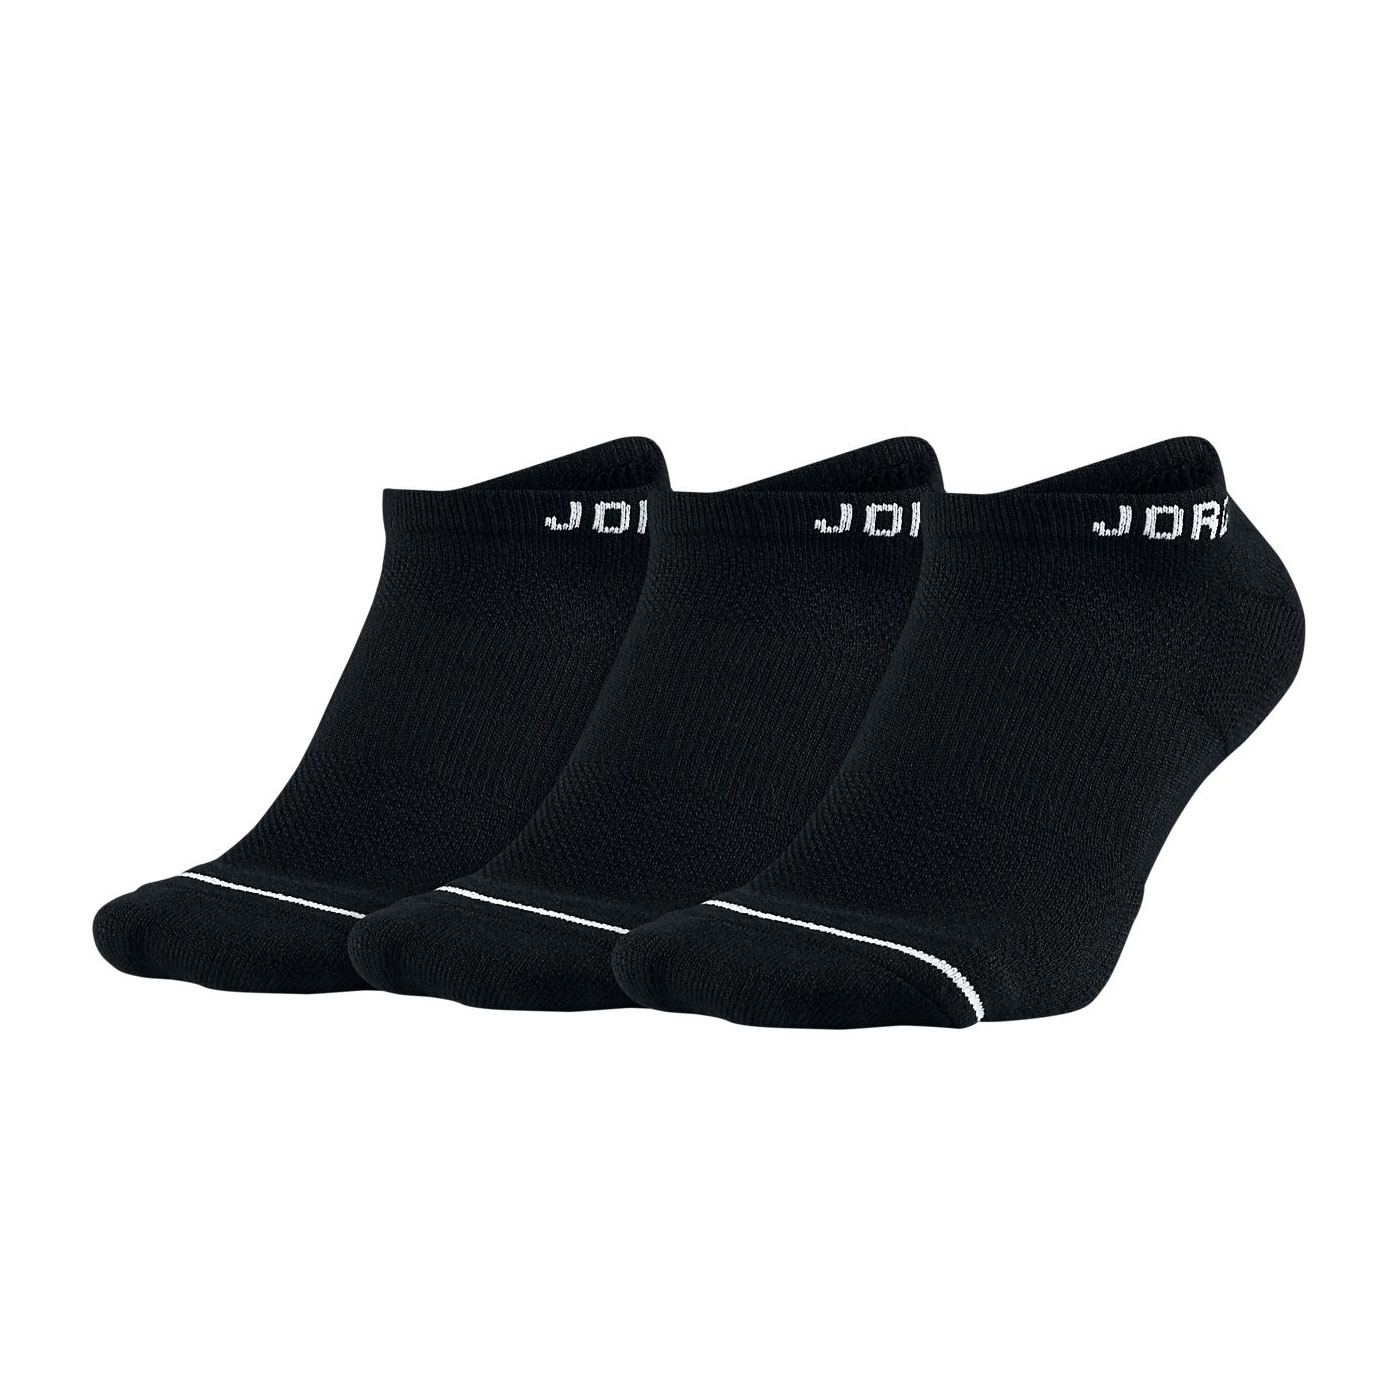 NIKE JORDAN 籃球短襪(三雙入) SX5546-010 - 黑黑白